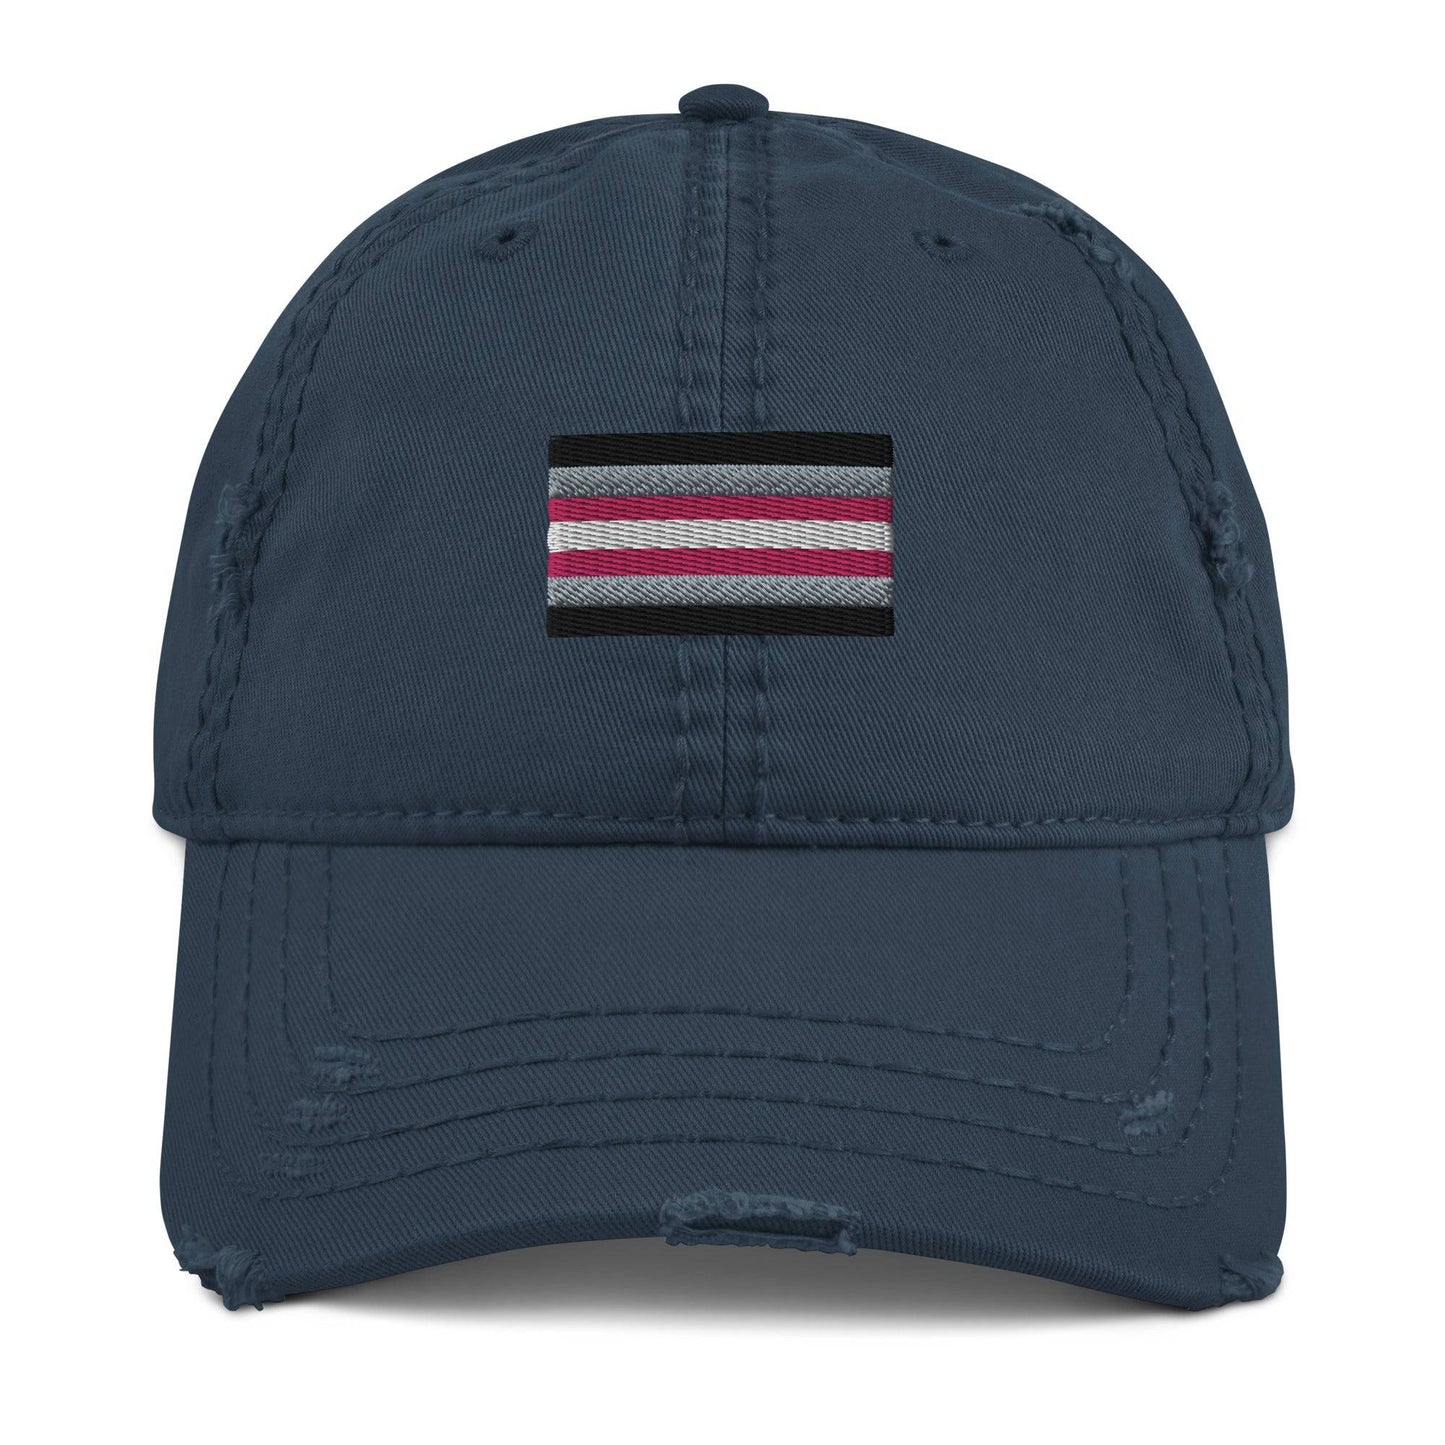 Demigirl Pride Flag Hat - Rose Gold Co. Shop